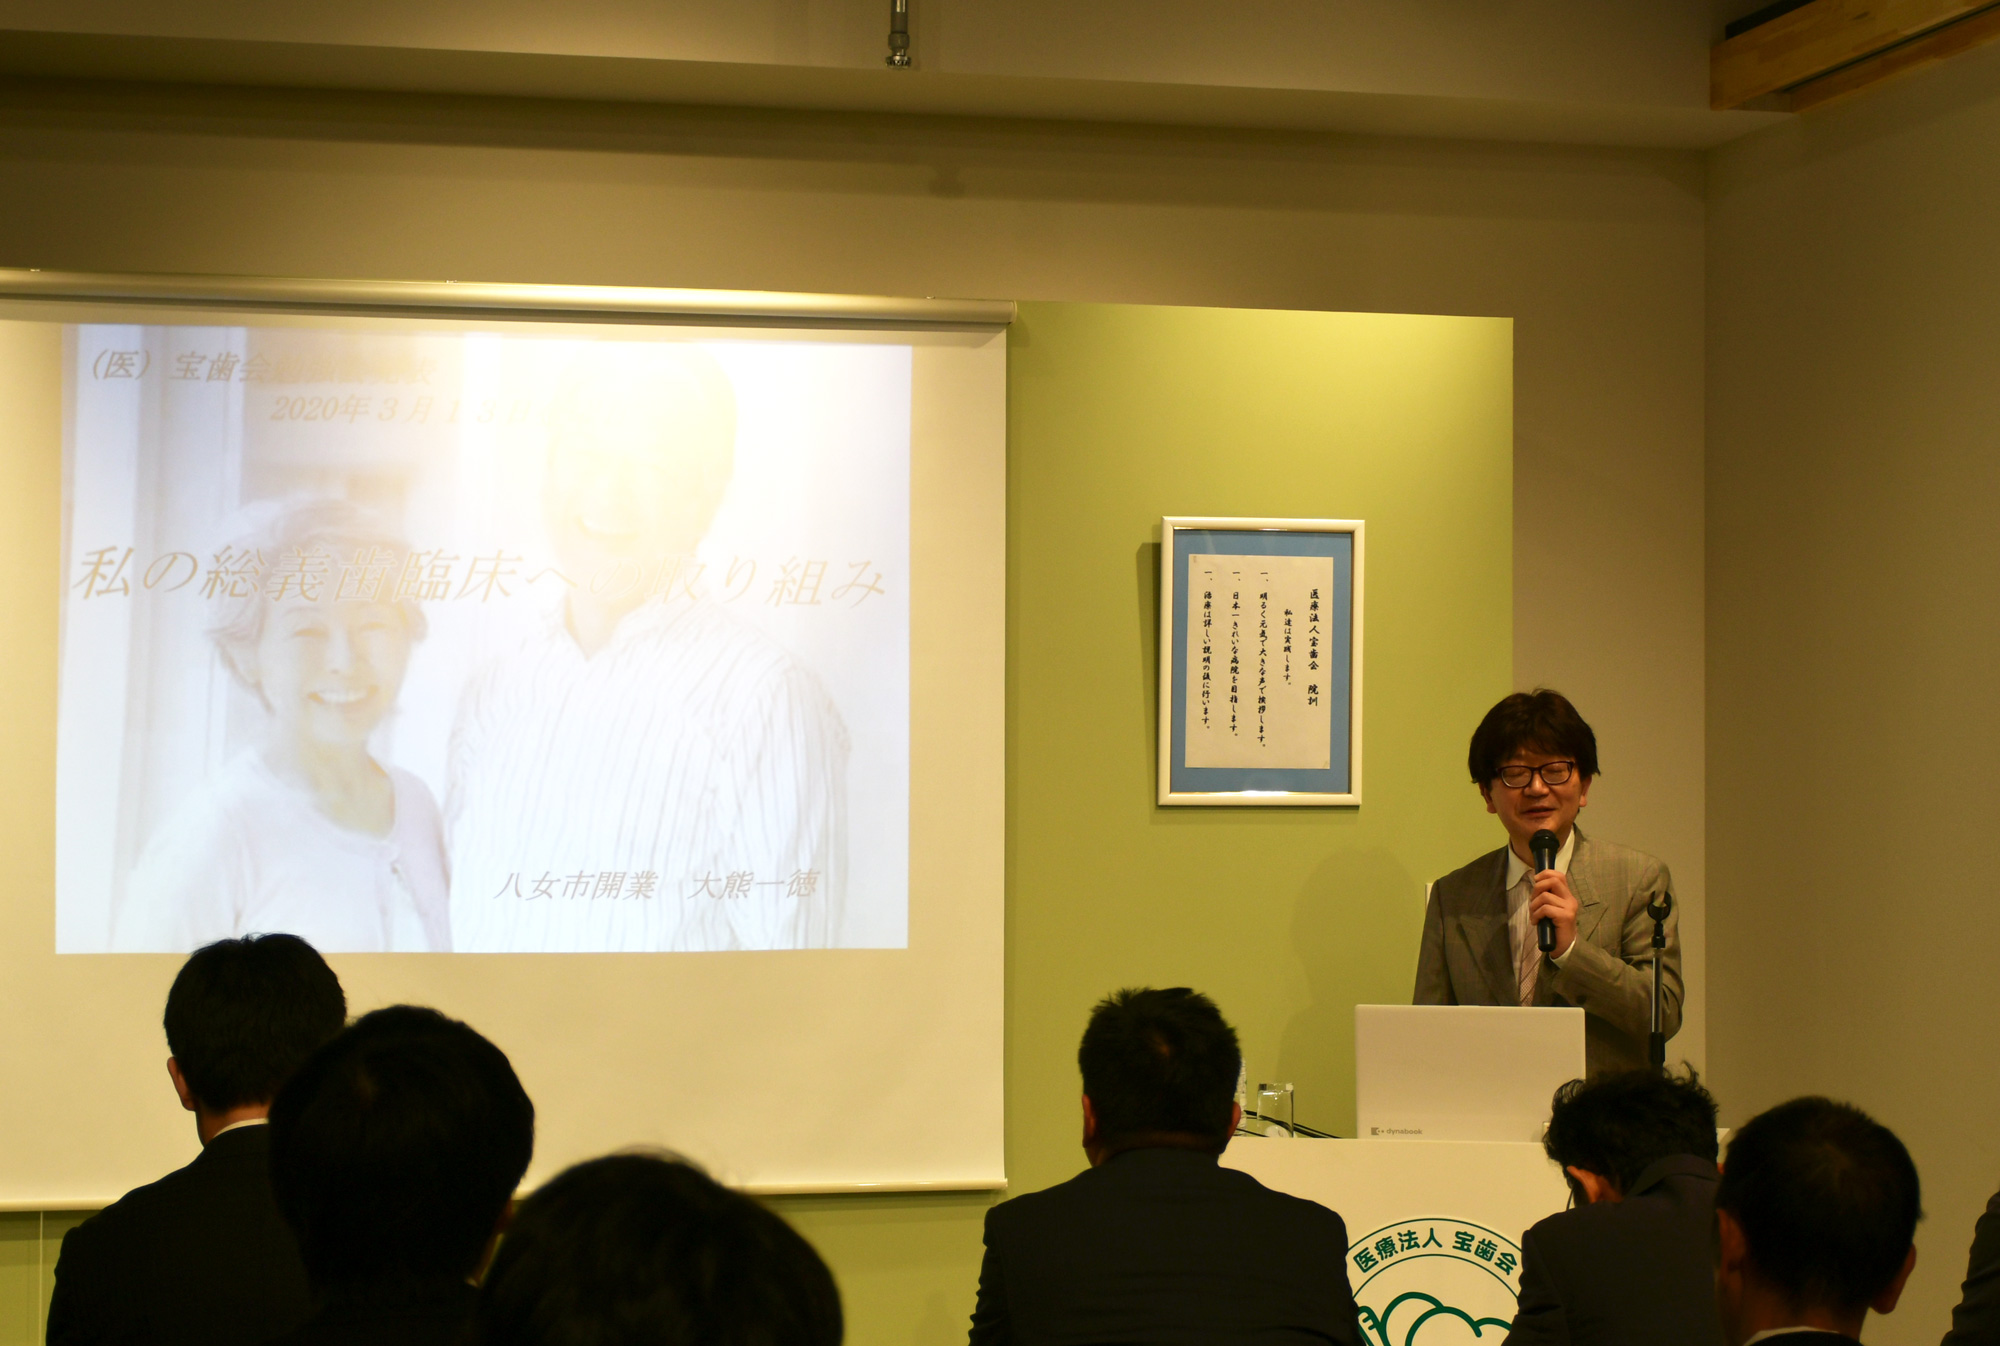 令和2年3月13日に大熊一徳先生のセミナーが開催されました。